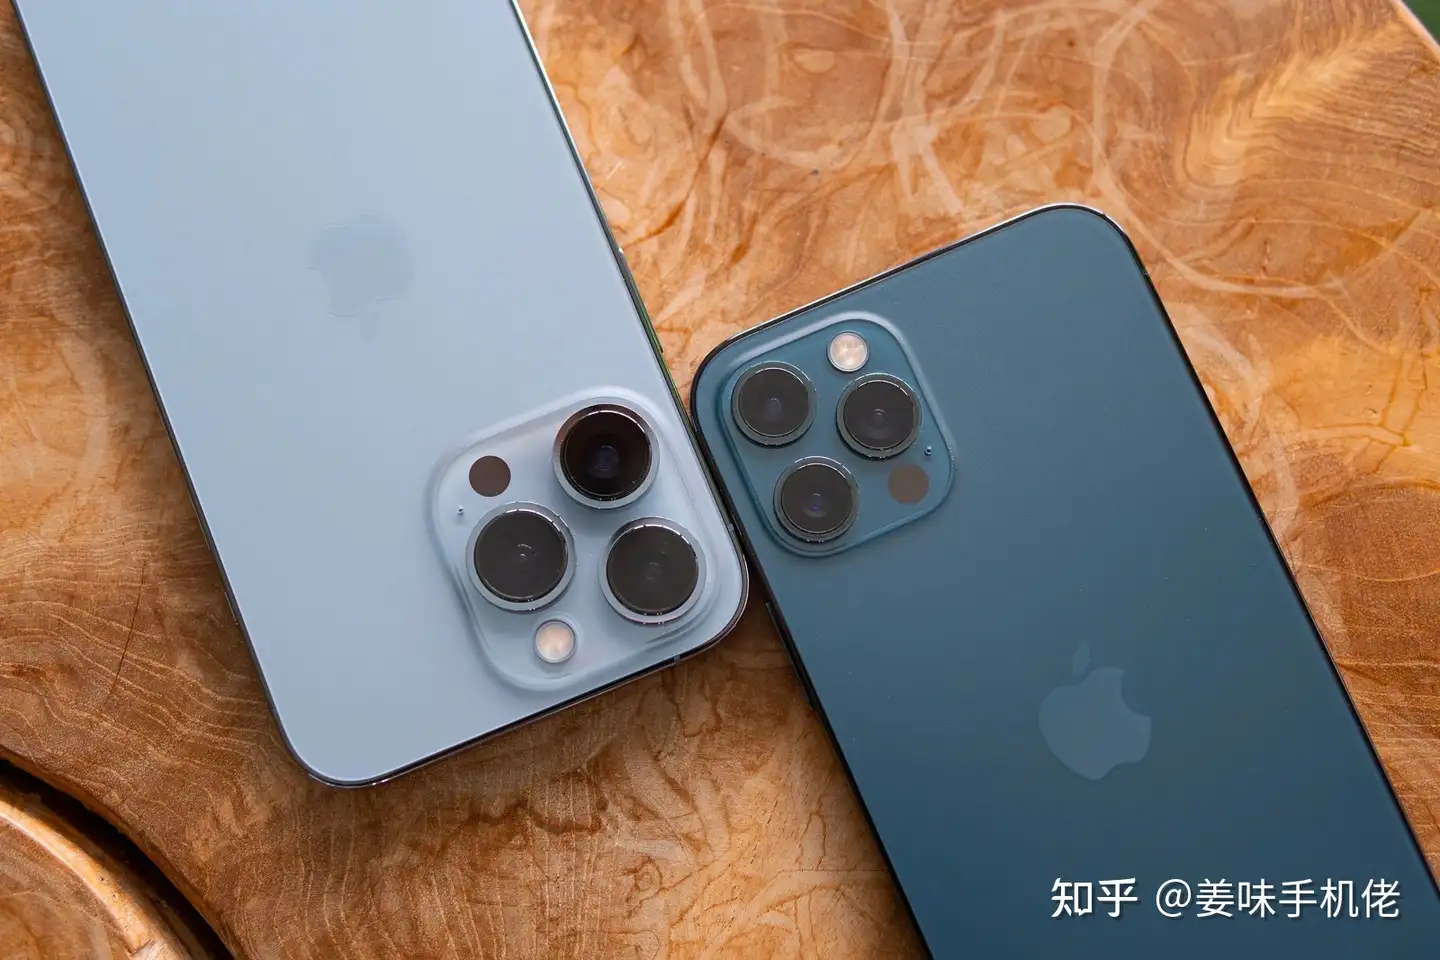 iPhone 13 Pro 和iPhone 12 Pro 你应该选择哪个？ - 知乎